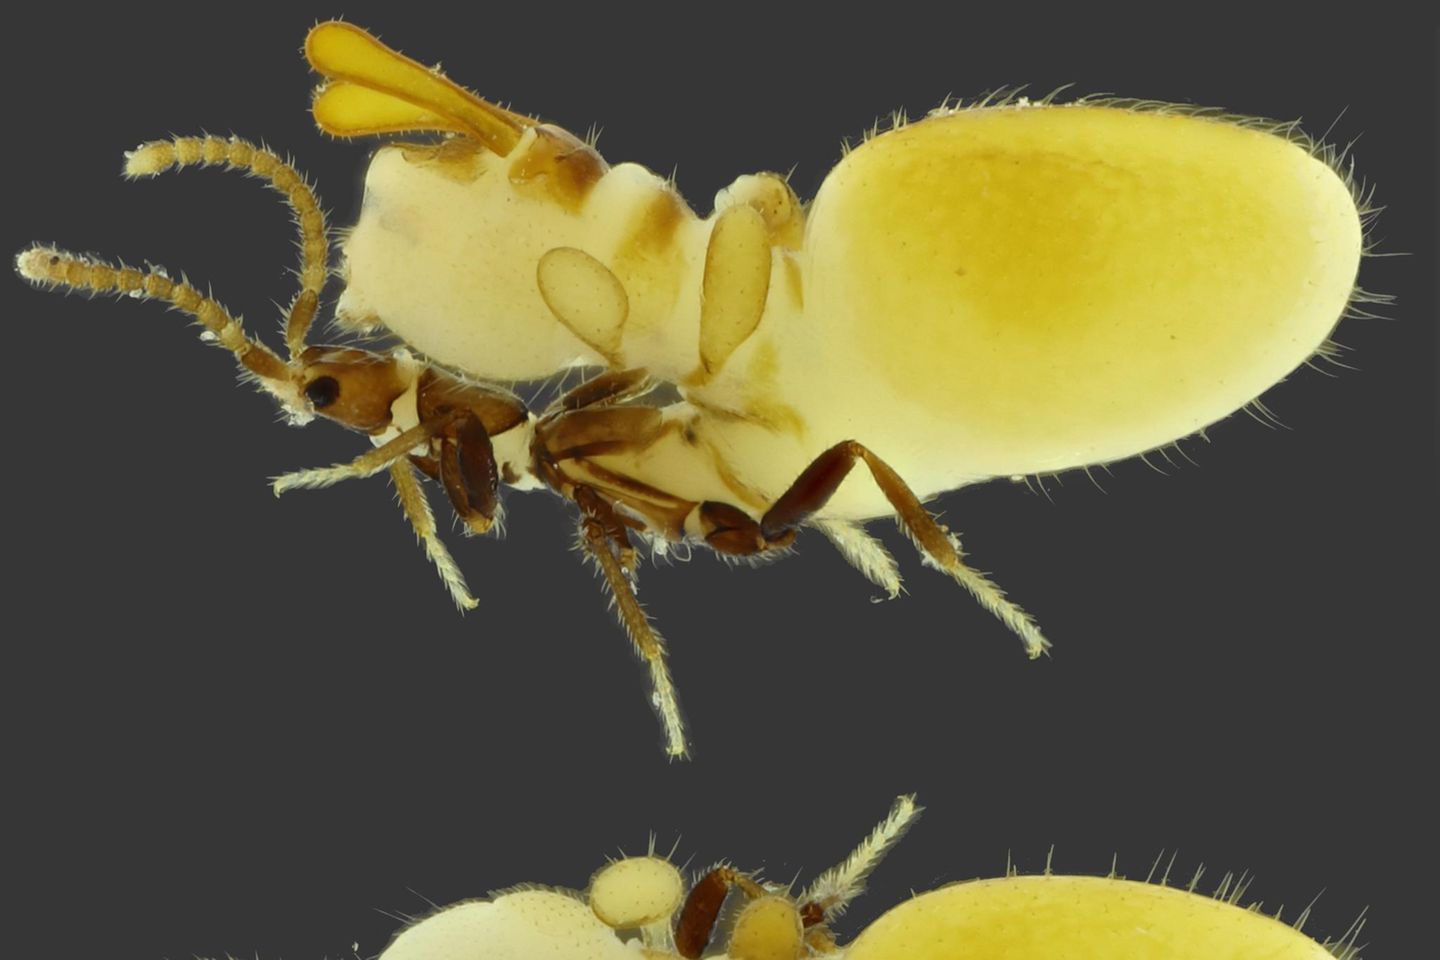 Tiere: Verrückte Mimikry: Käfer trägt Termiten-Attrappe auf Rücken - [GEO]